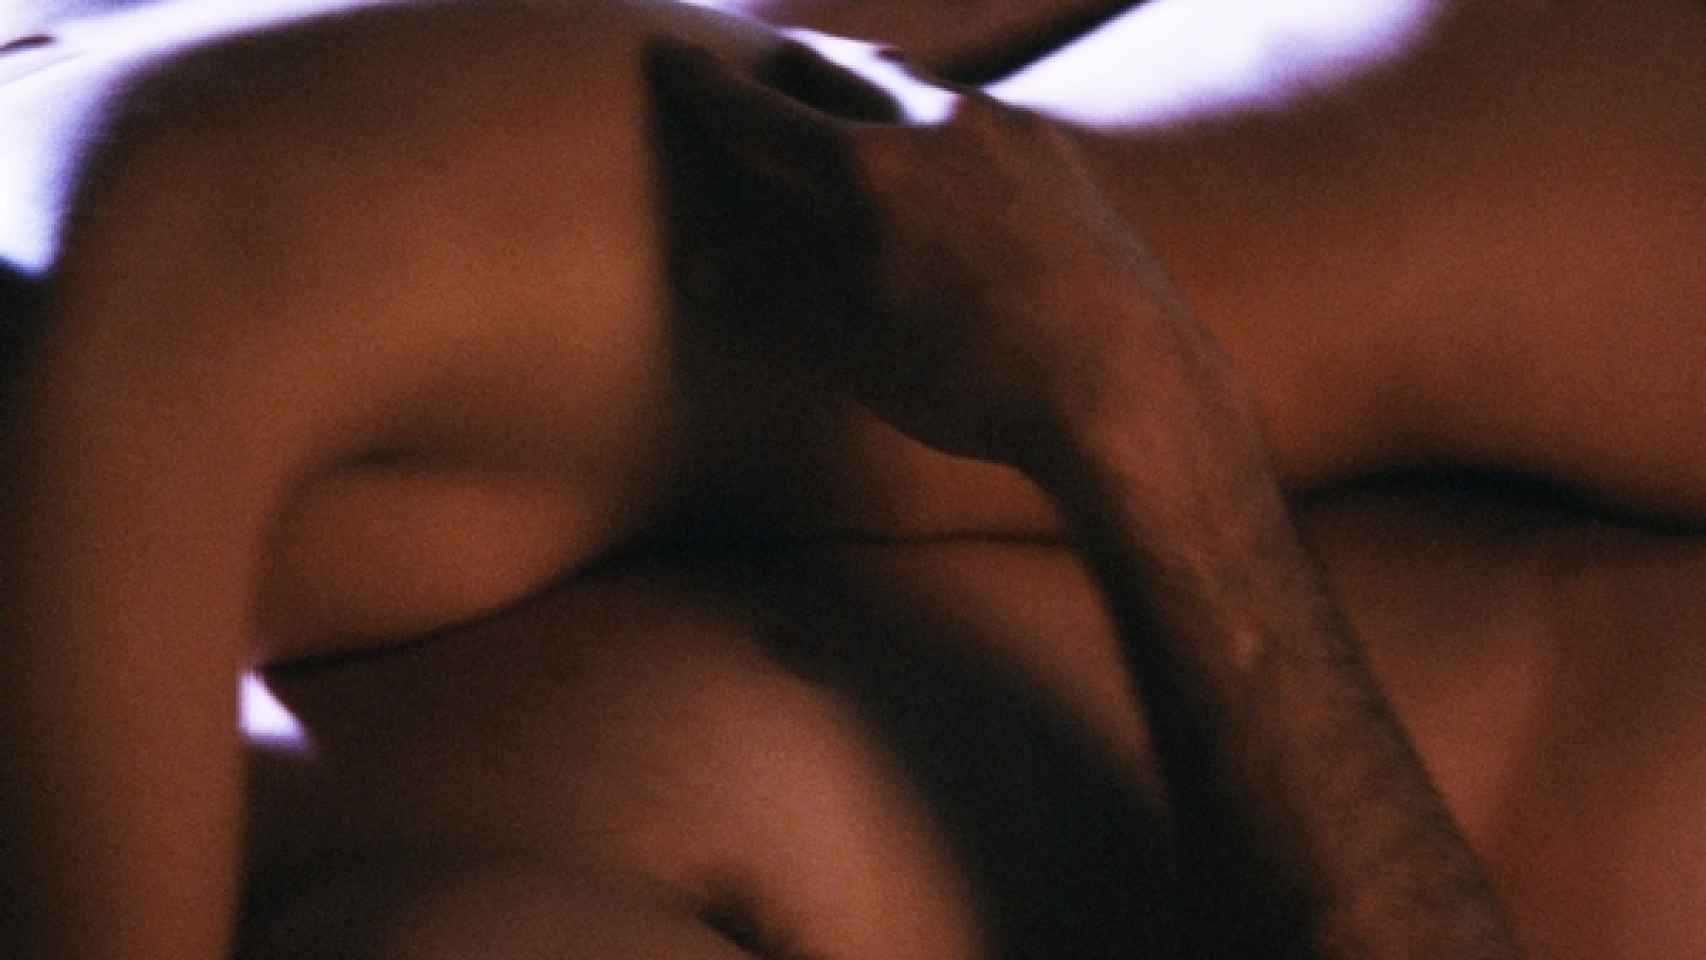 La relación sexual debe tener la duración necesaria para que hombre y mujer alcancen el orgasmo, preliminares incluidos.